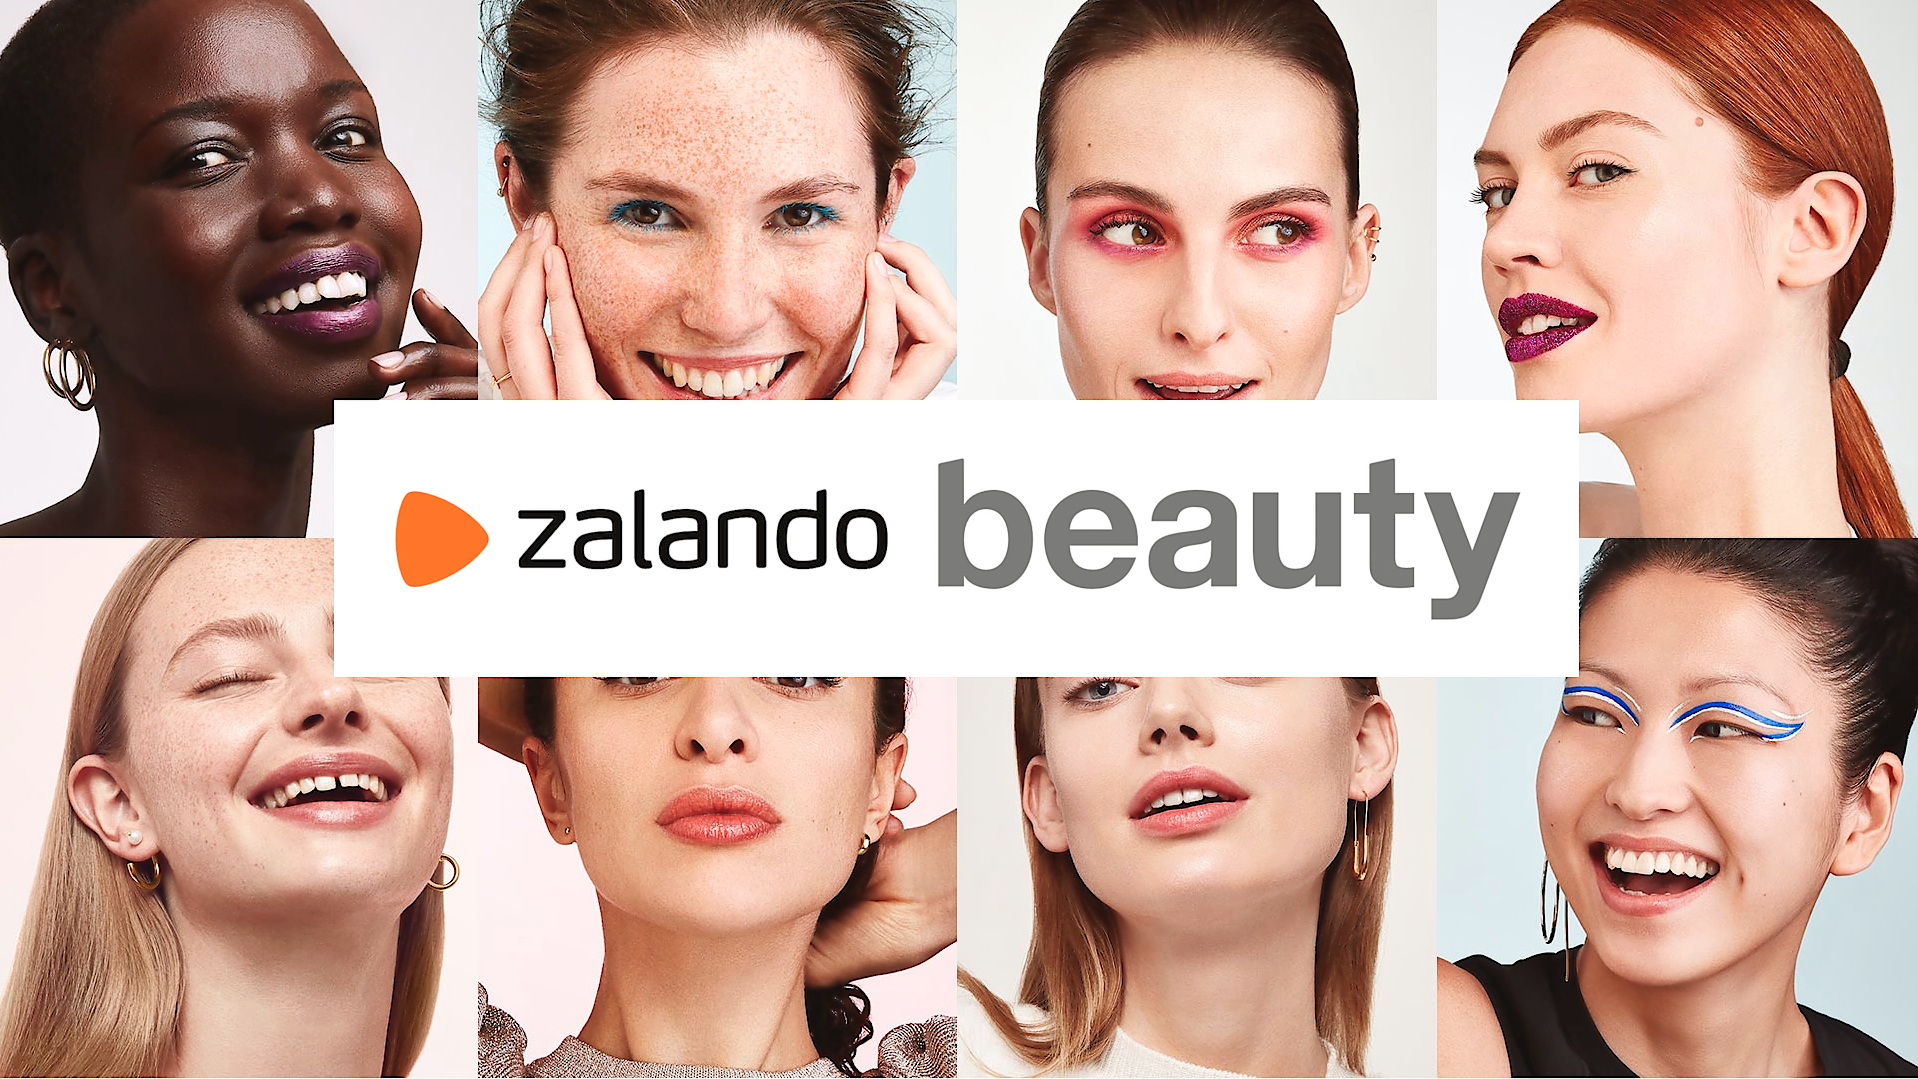 Zalando startet in der Schweiz mit dem Beauty-Sortiment am 11. 12.2019